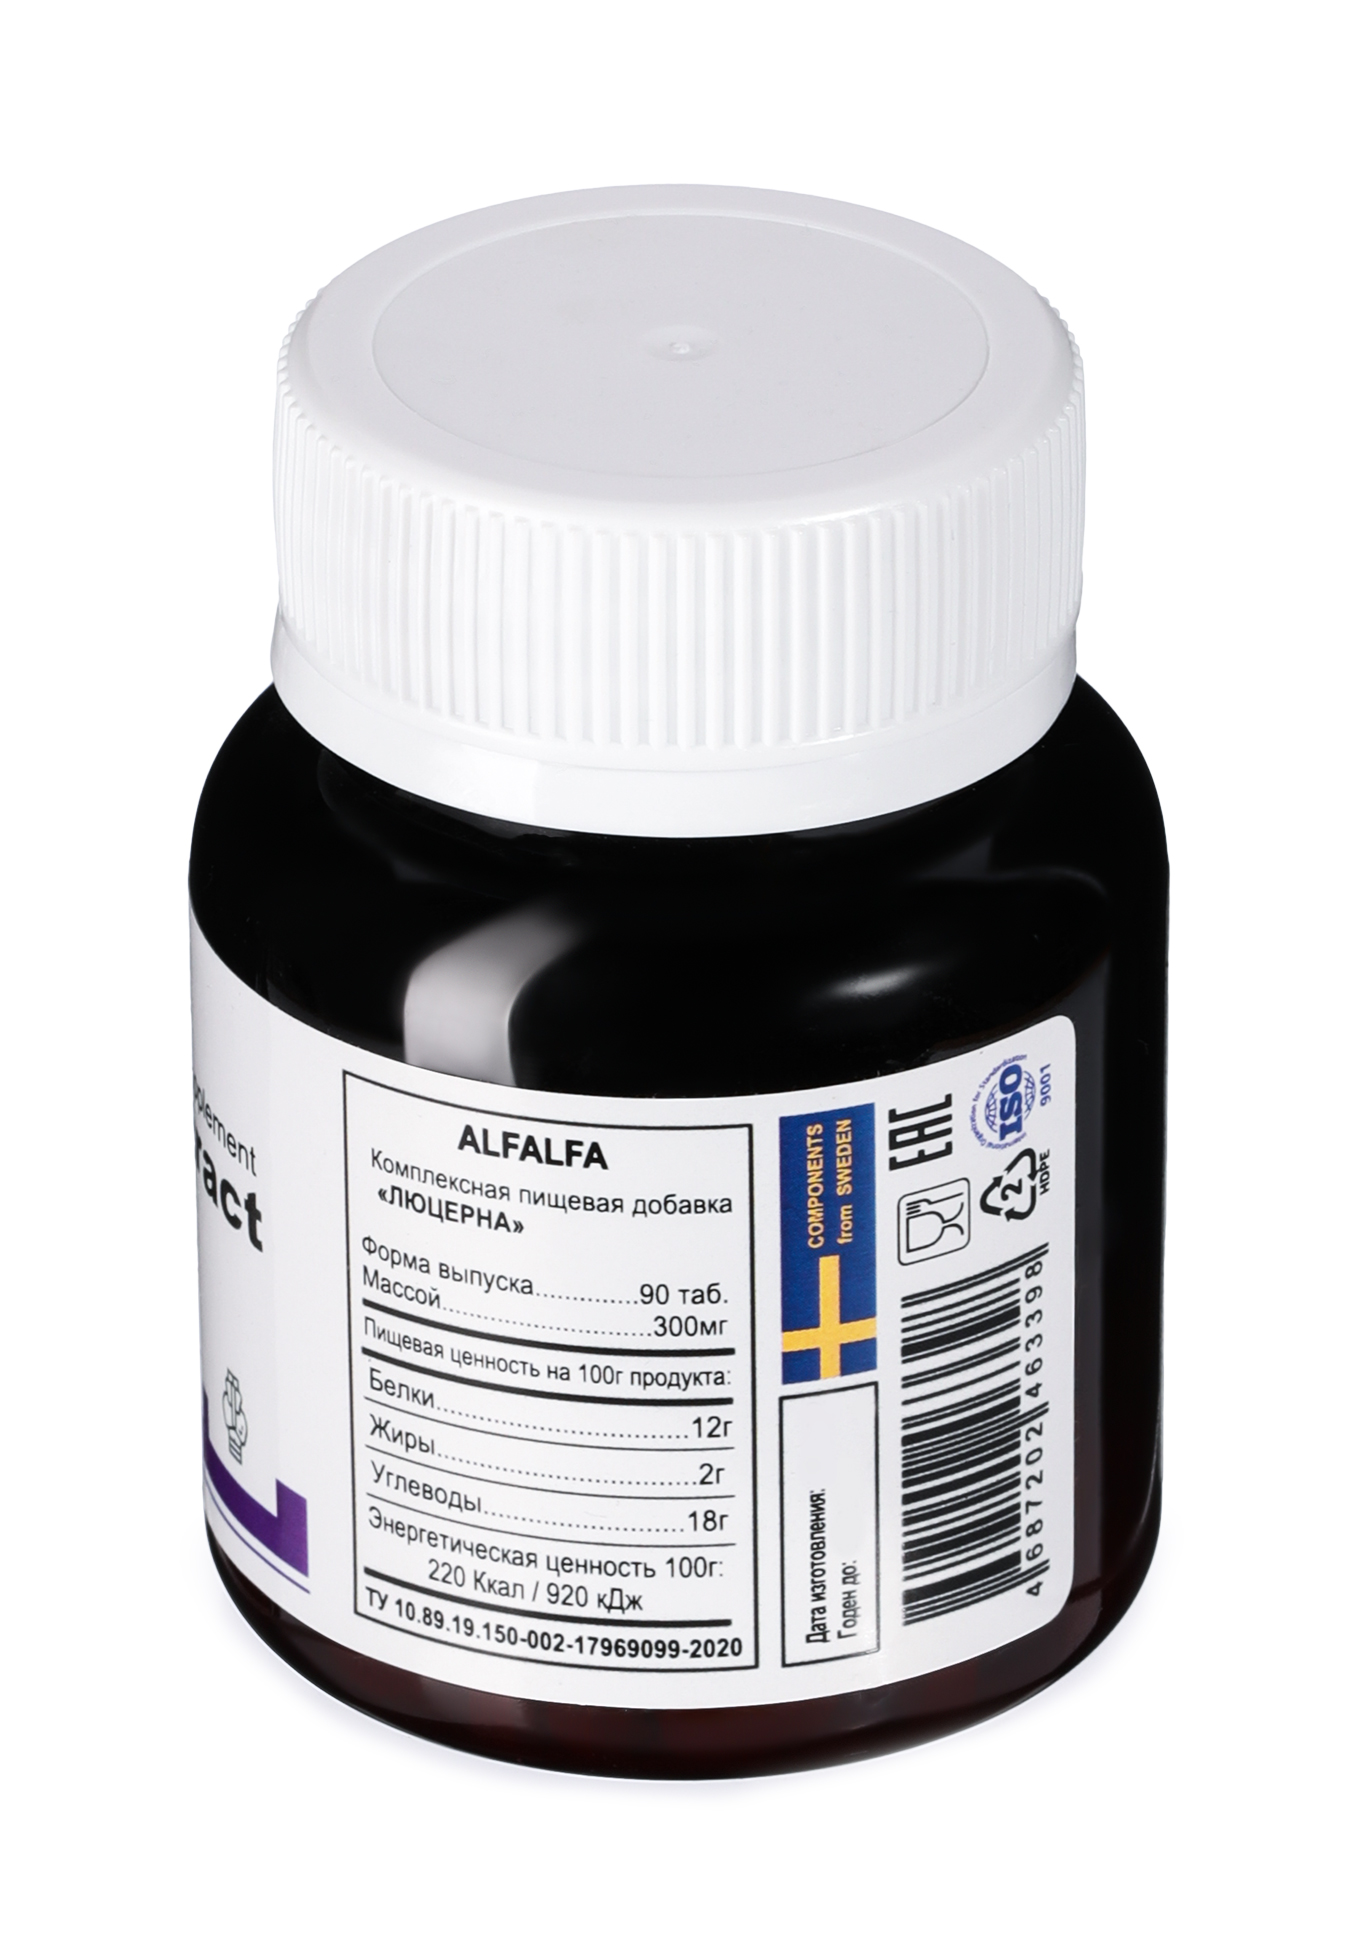 Комплекс ALFALFA против атеросклероза Nutriheal - фото 2